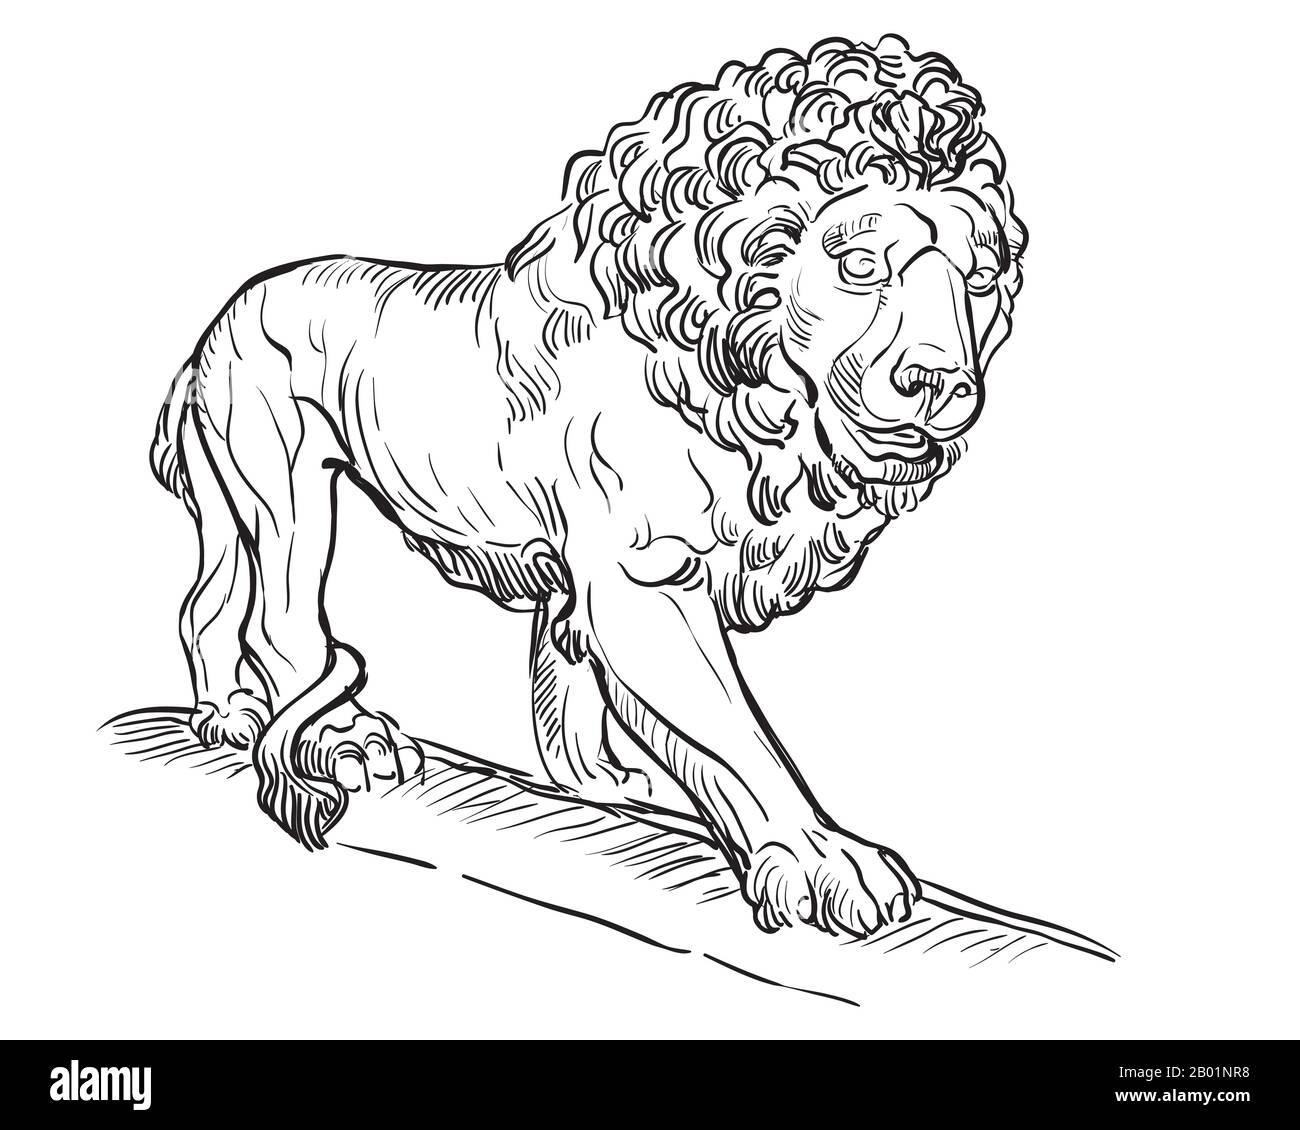 Esquisse de la vue en profil de la statue de lion en marbre à pied. Illustration du dessin vectoriel en couleur noire isolée sur fond blanc. Elément graphique pour d Illustration de Vecteur